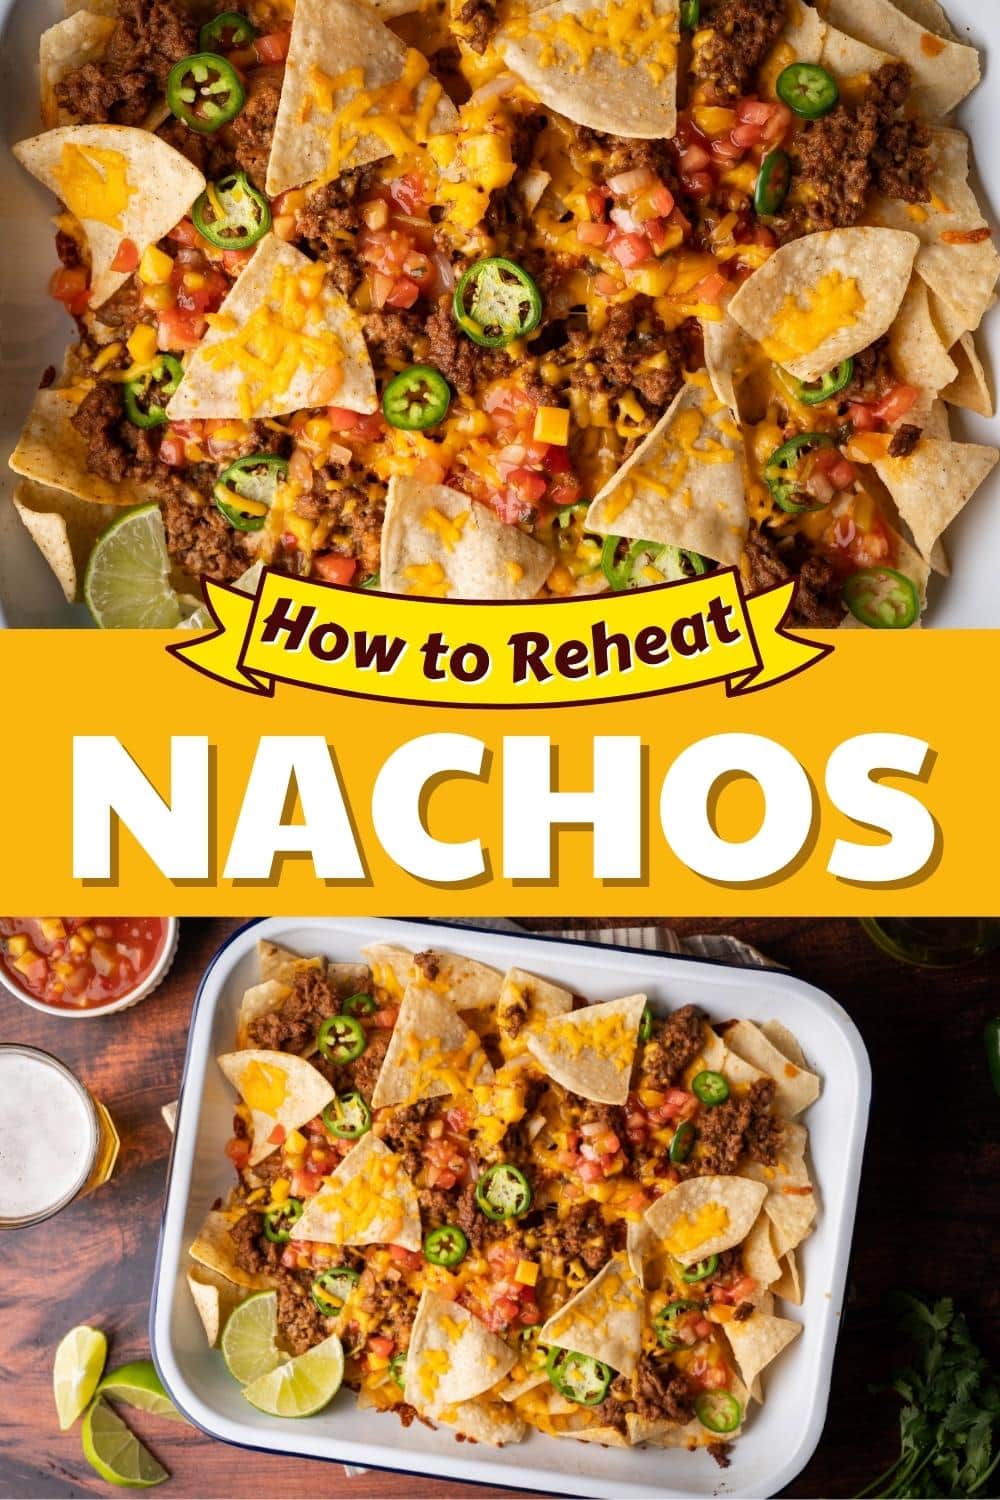 How to Reheat Nachos